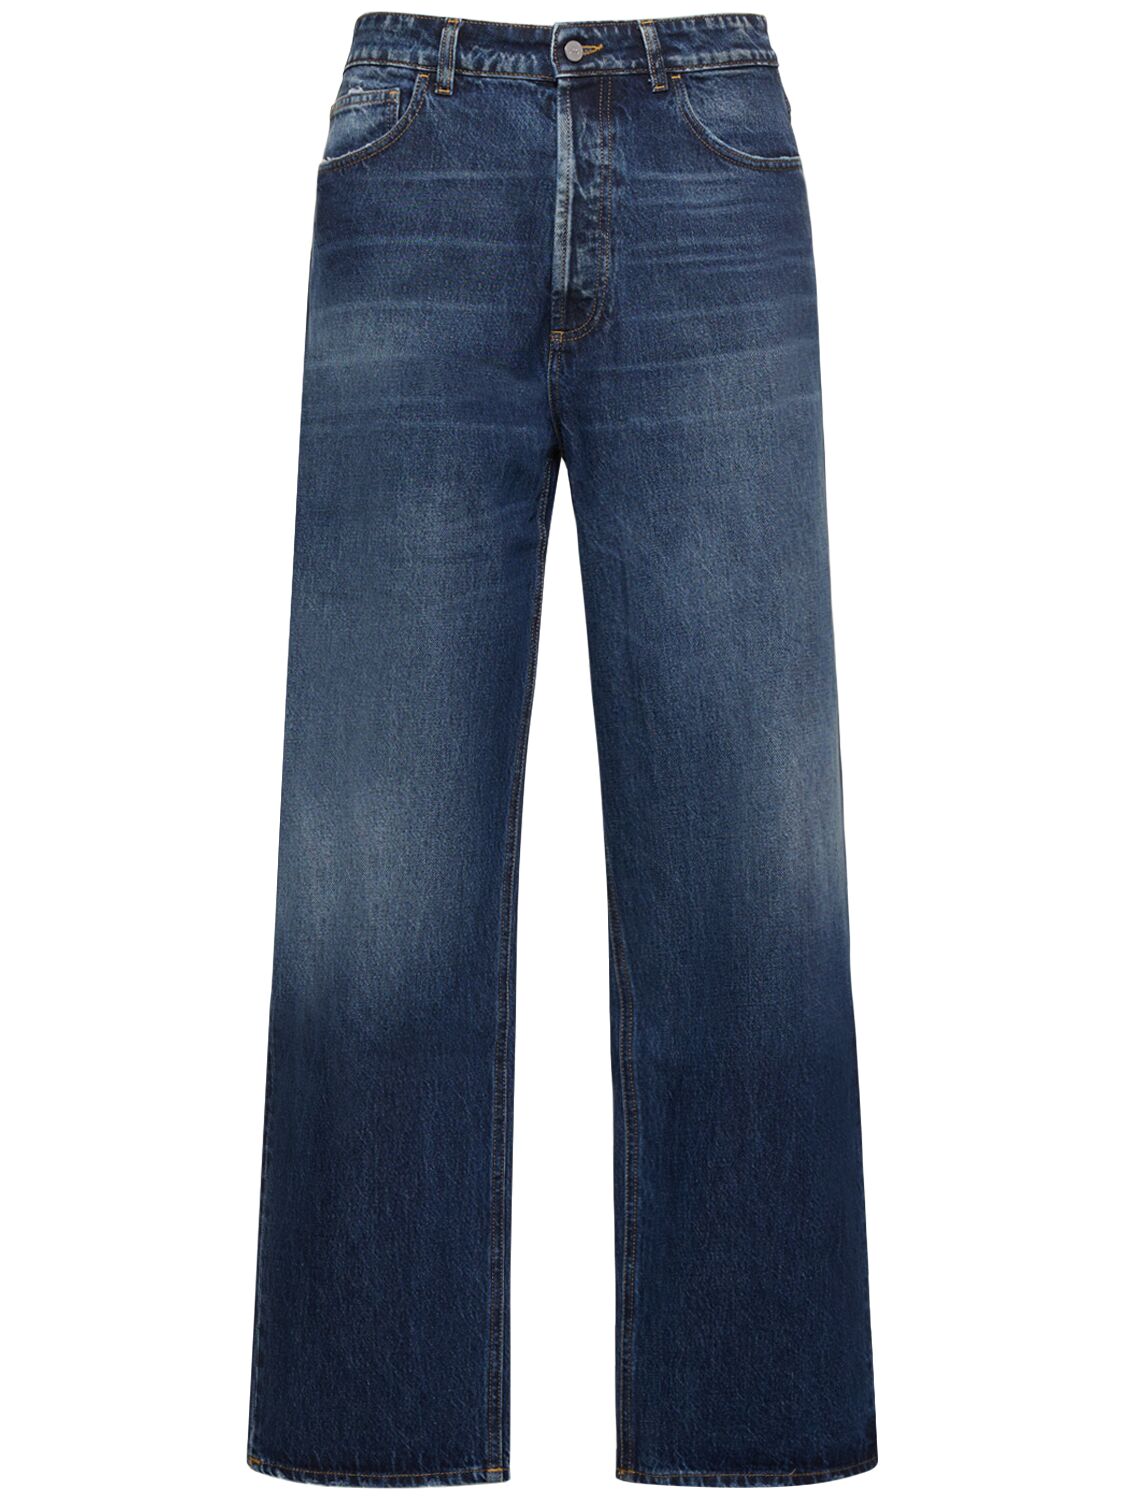 Vintage Wash Wide Cotton Denim Jeans – MEN > CLOTHING > JEANS